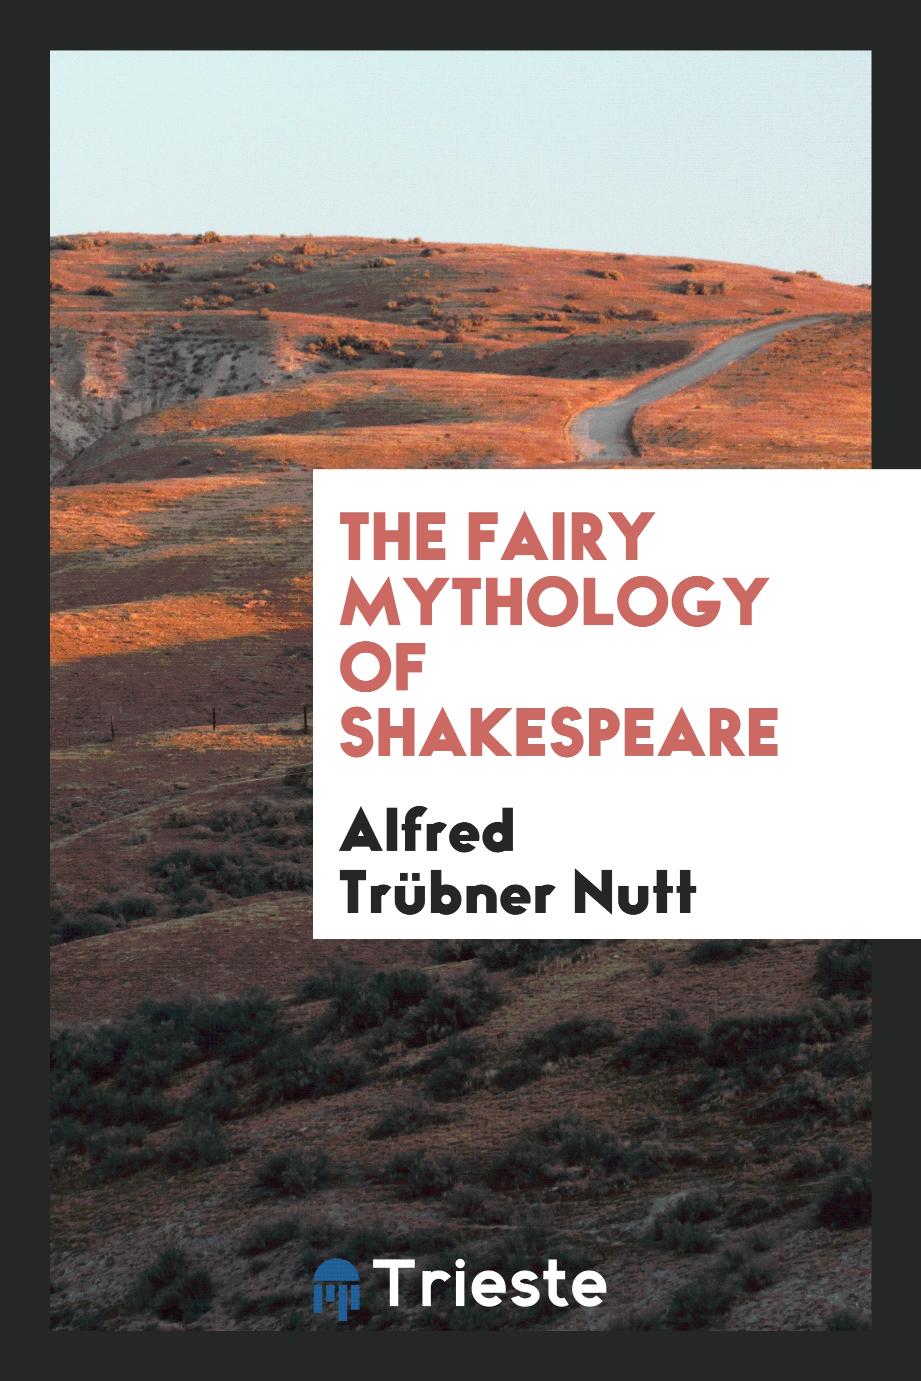 The fairy mythology of Shakespeare